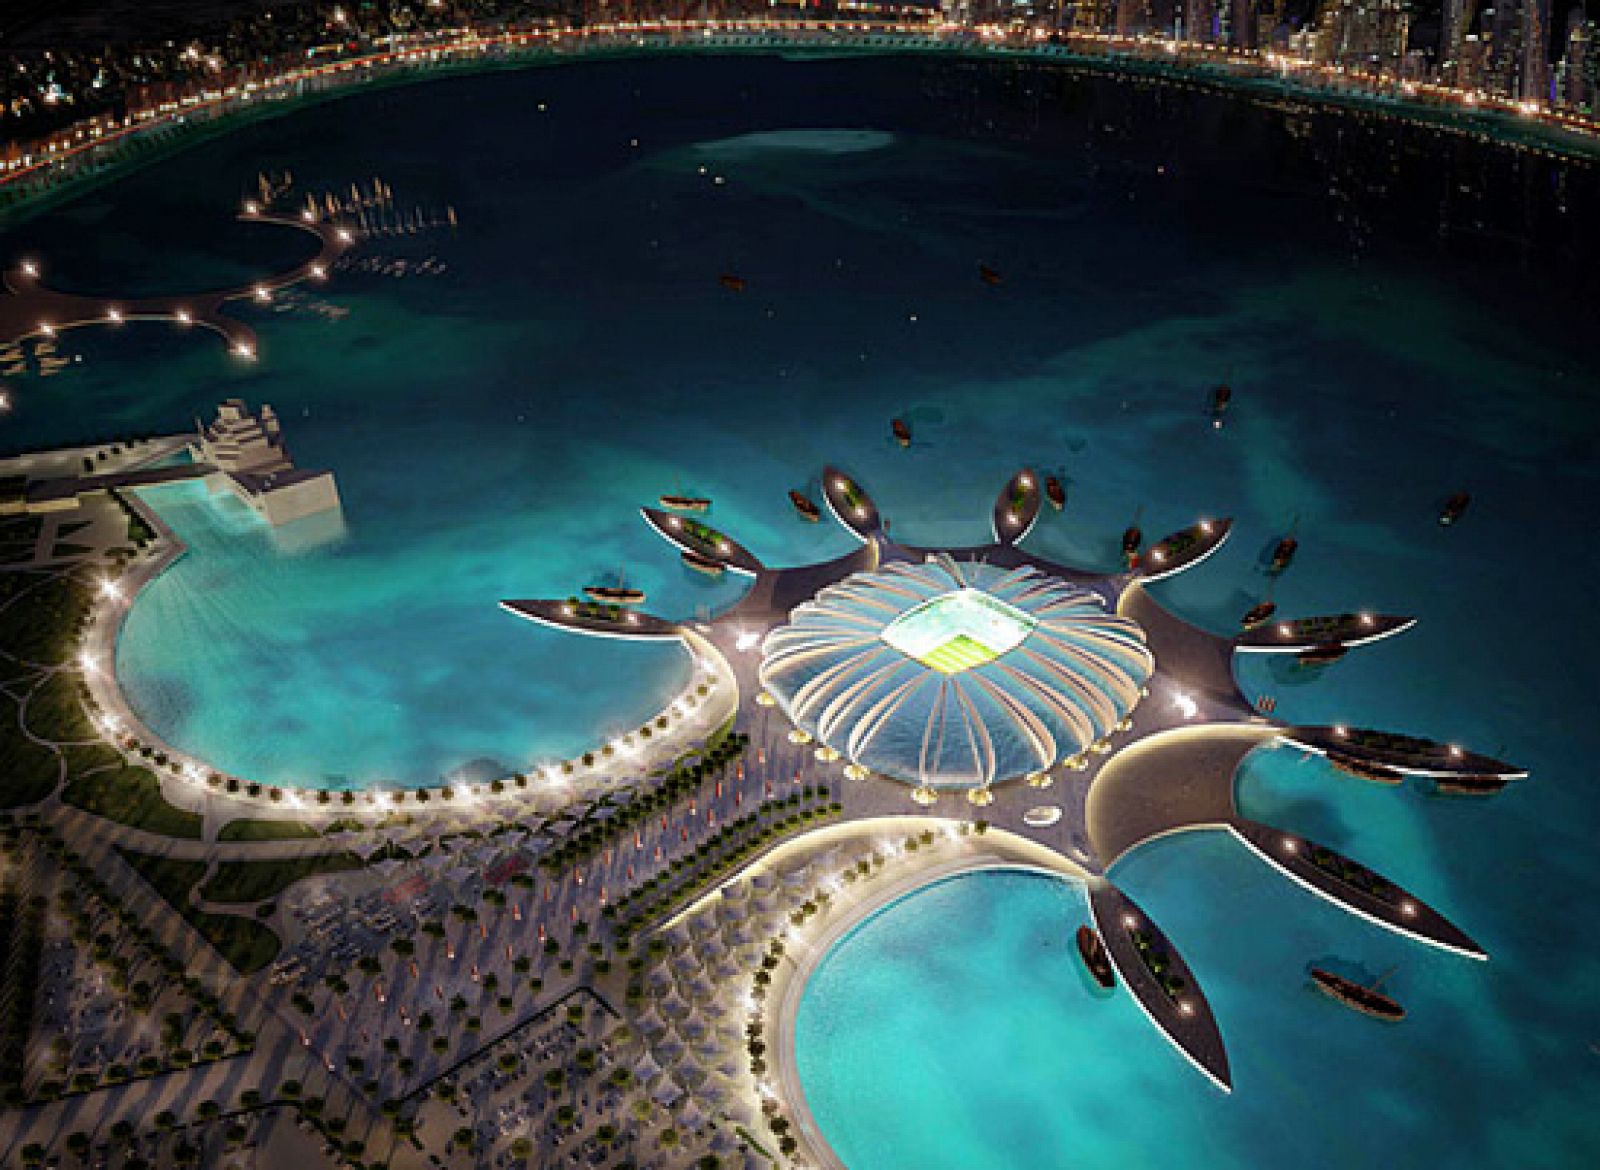 Imagen 3D creada por ordenador facilitada por el Comité de organización del Mundial de fútbol Qatar 2022, que muestra la propuesta del que será el estadio Doha Port, en Doha. El Doha Port tendrá capacidad para 44.950 personas.